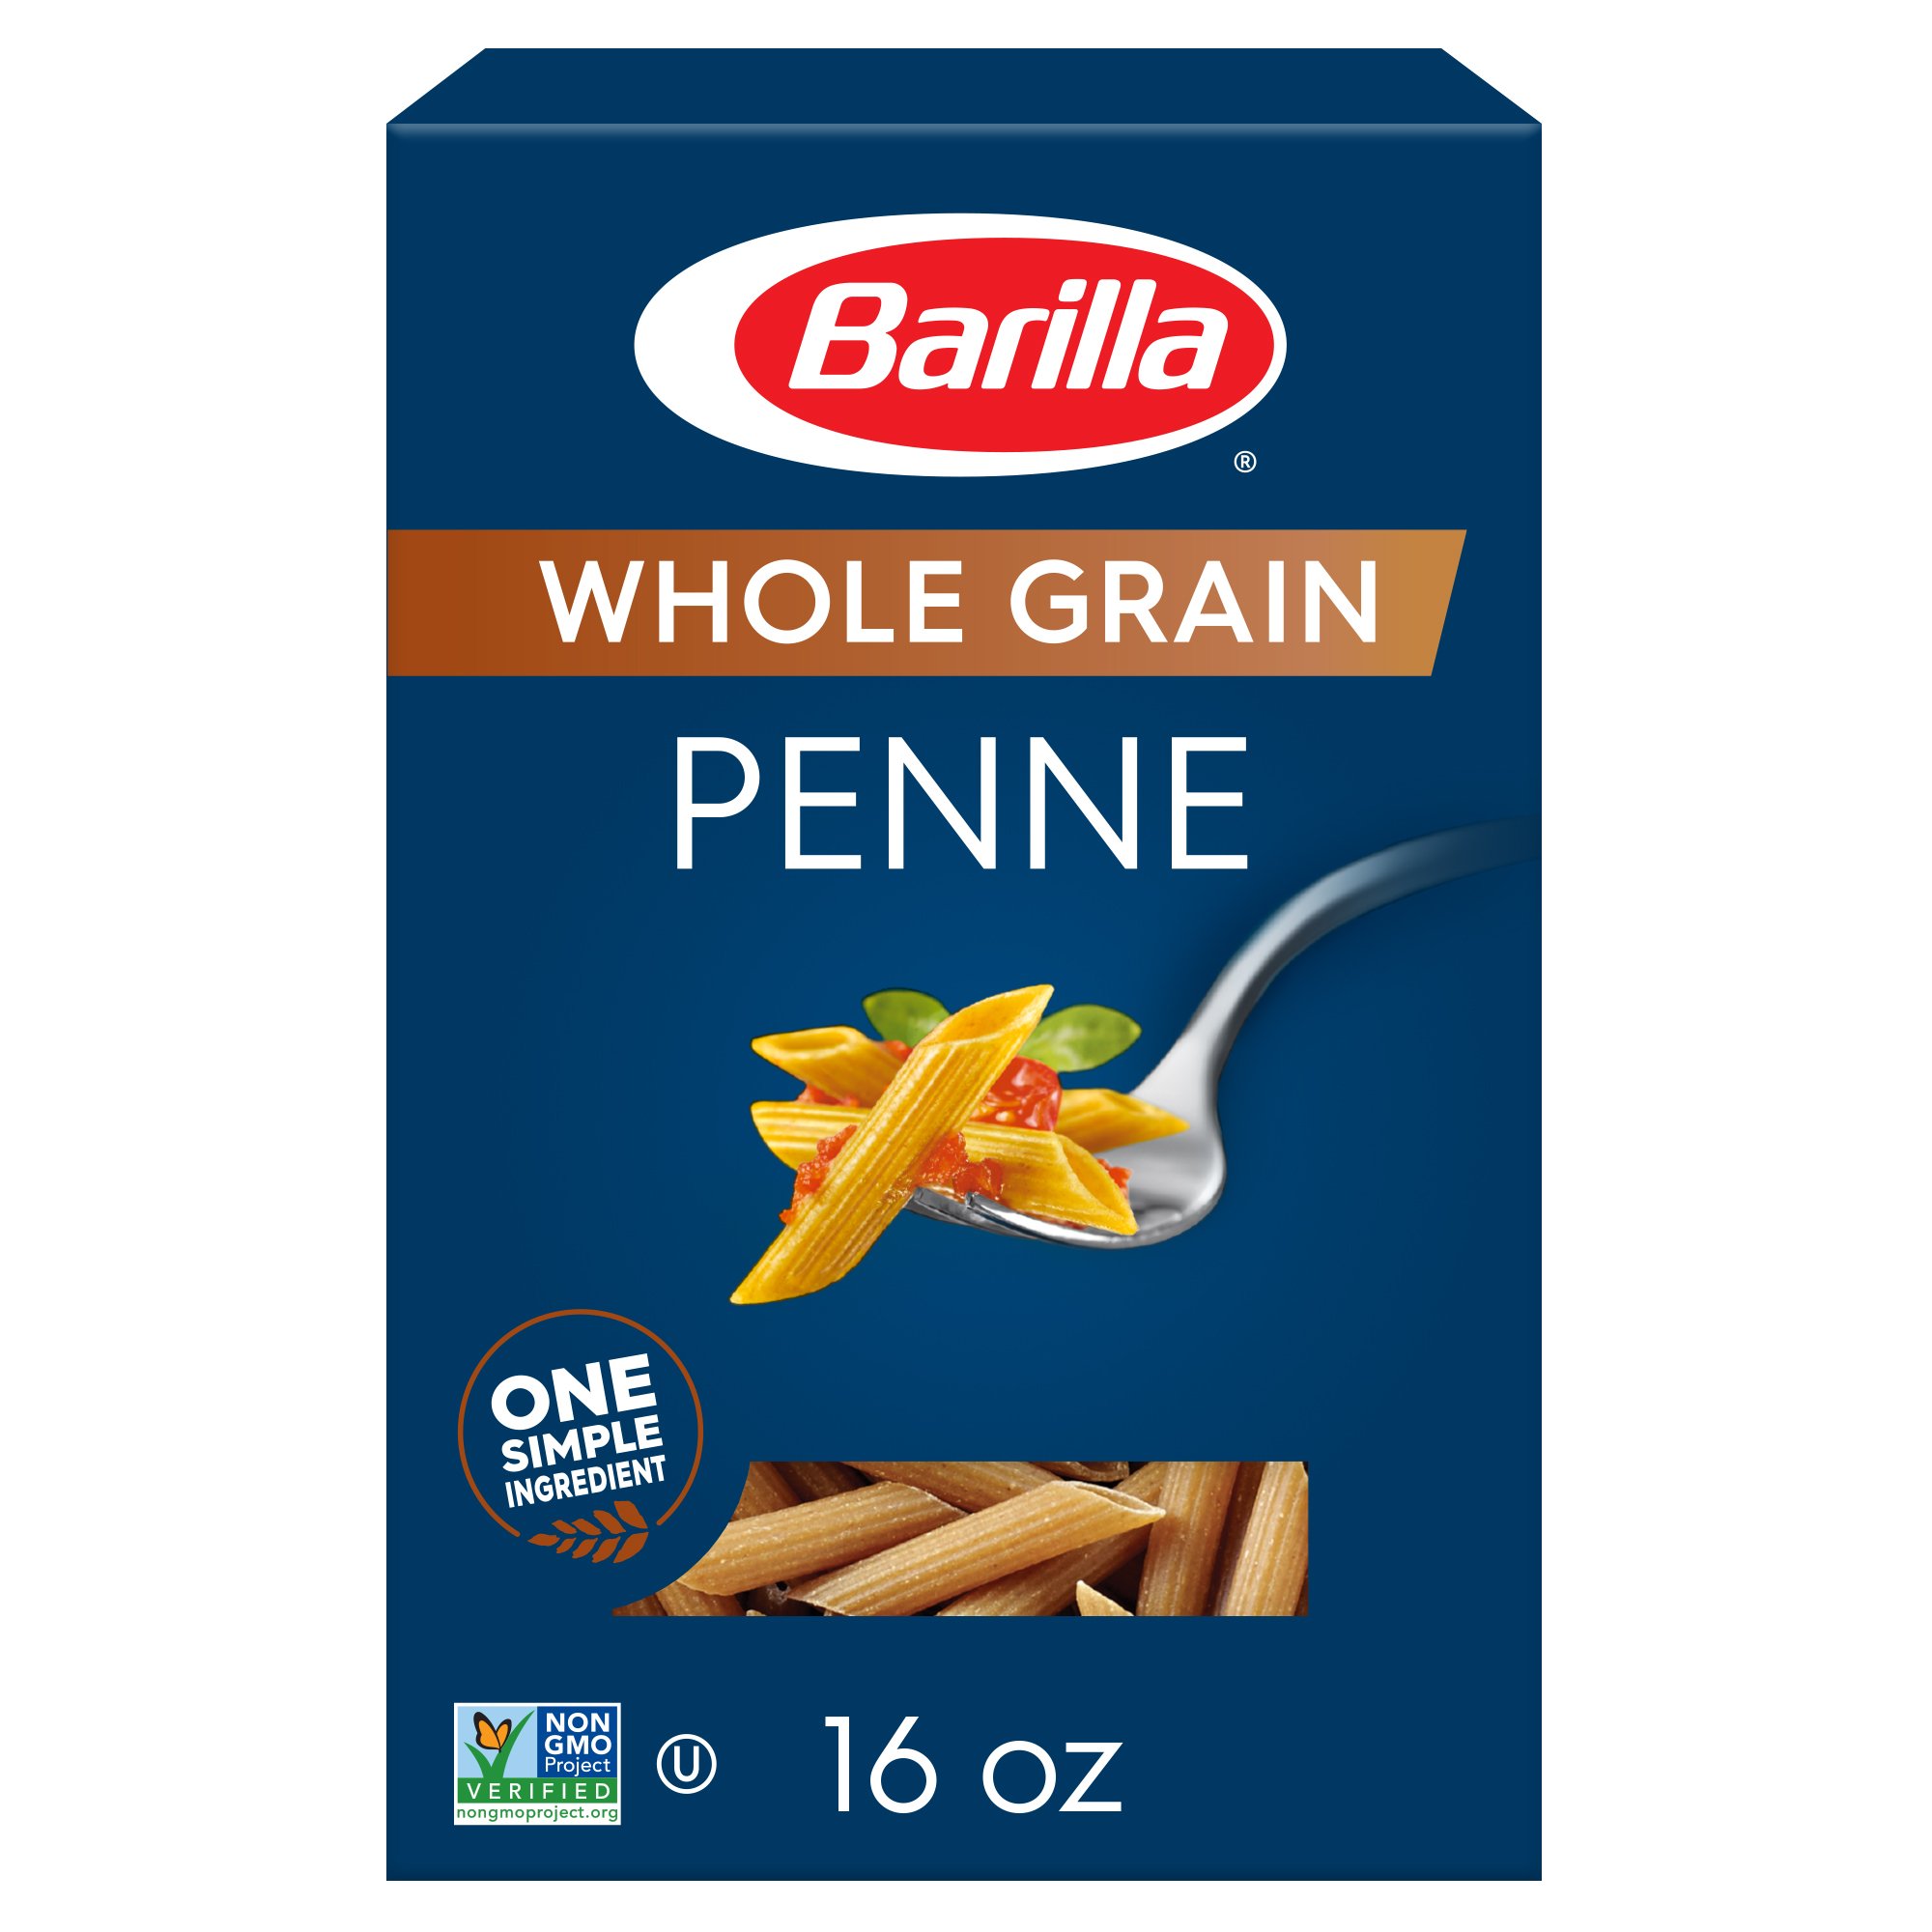 Barilla Whole Grain Penne Pasta - Shop Pasta at H-E-B